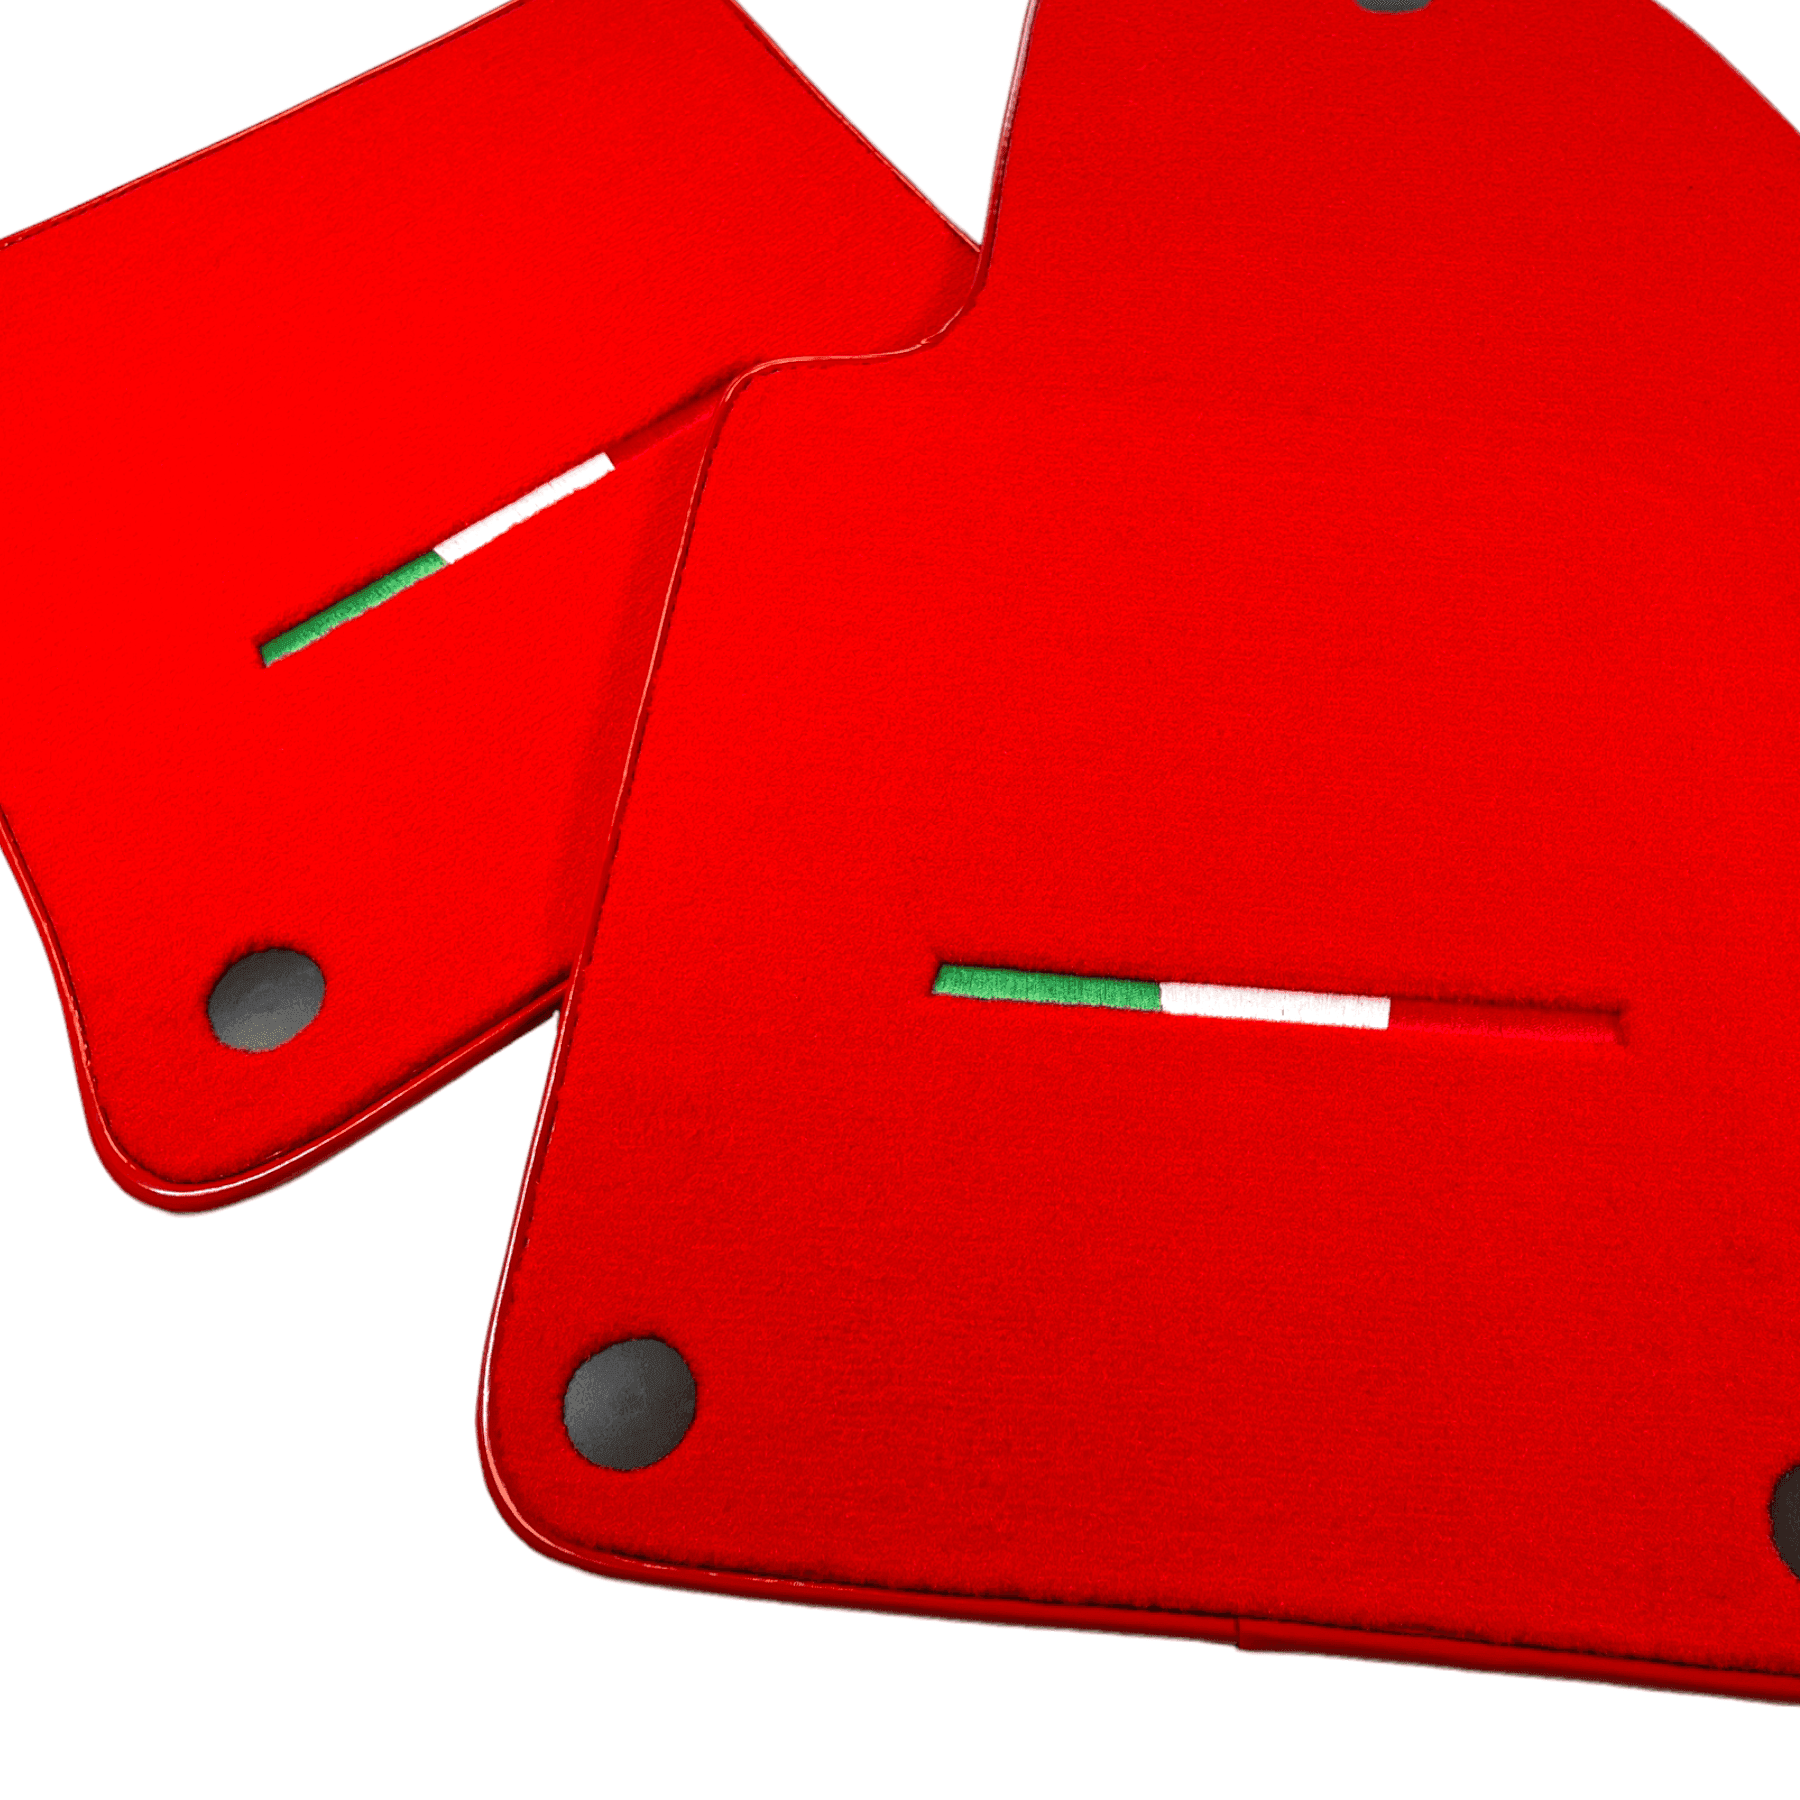 Red Floor Mats For Ferrari 612 Scaglietti 2005-2011 Italian Edition - AutoWin